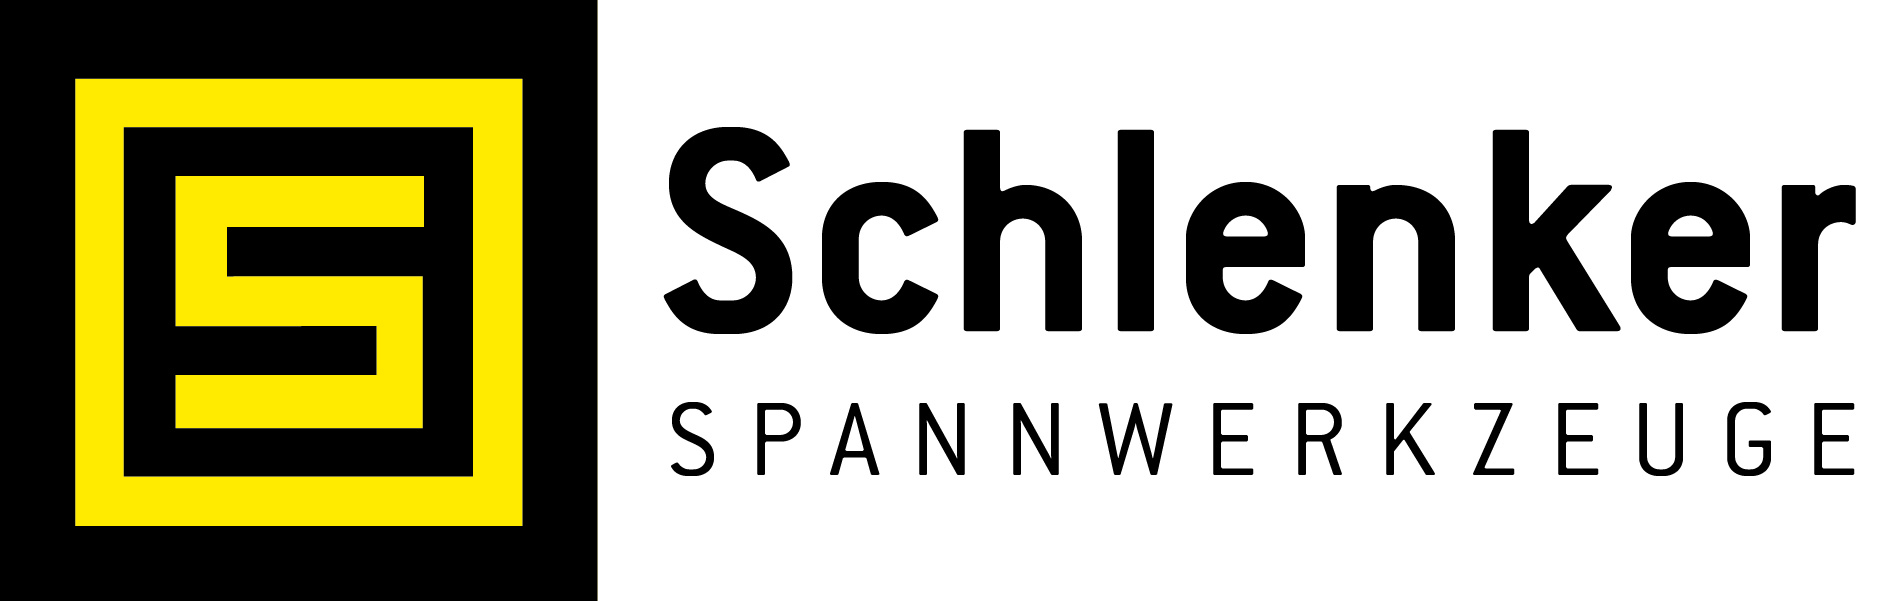 Schlenker Spannwerkzeuge GmbH & Co. KG